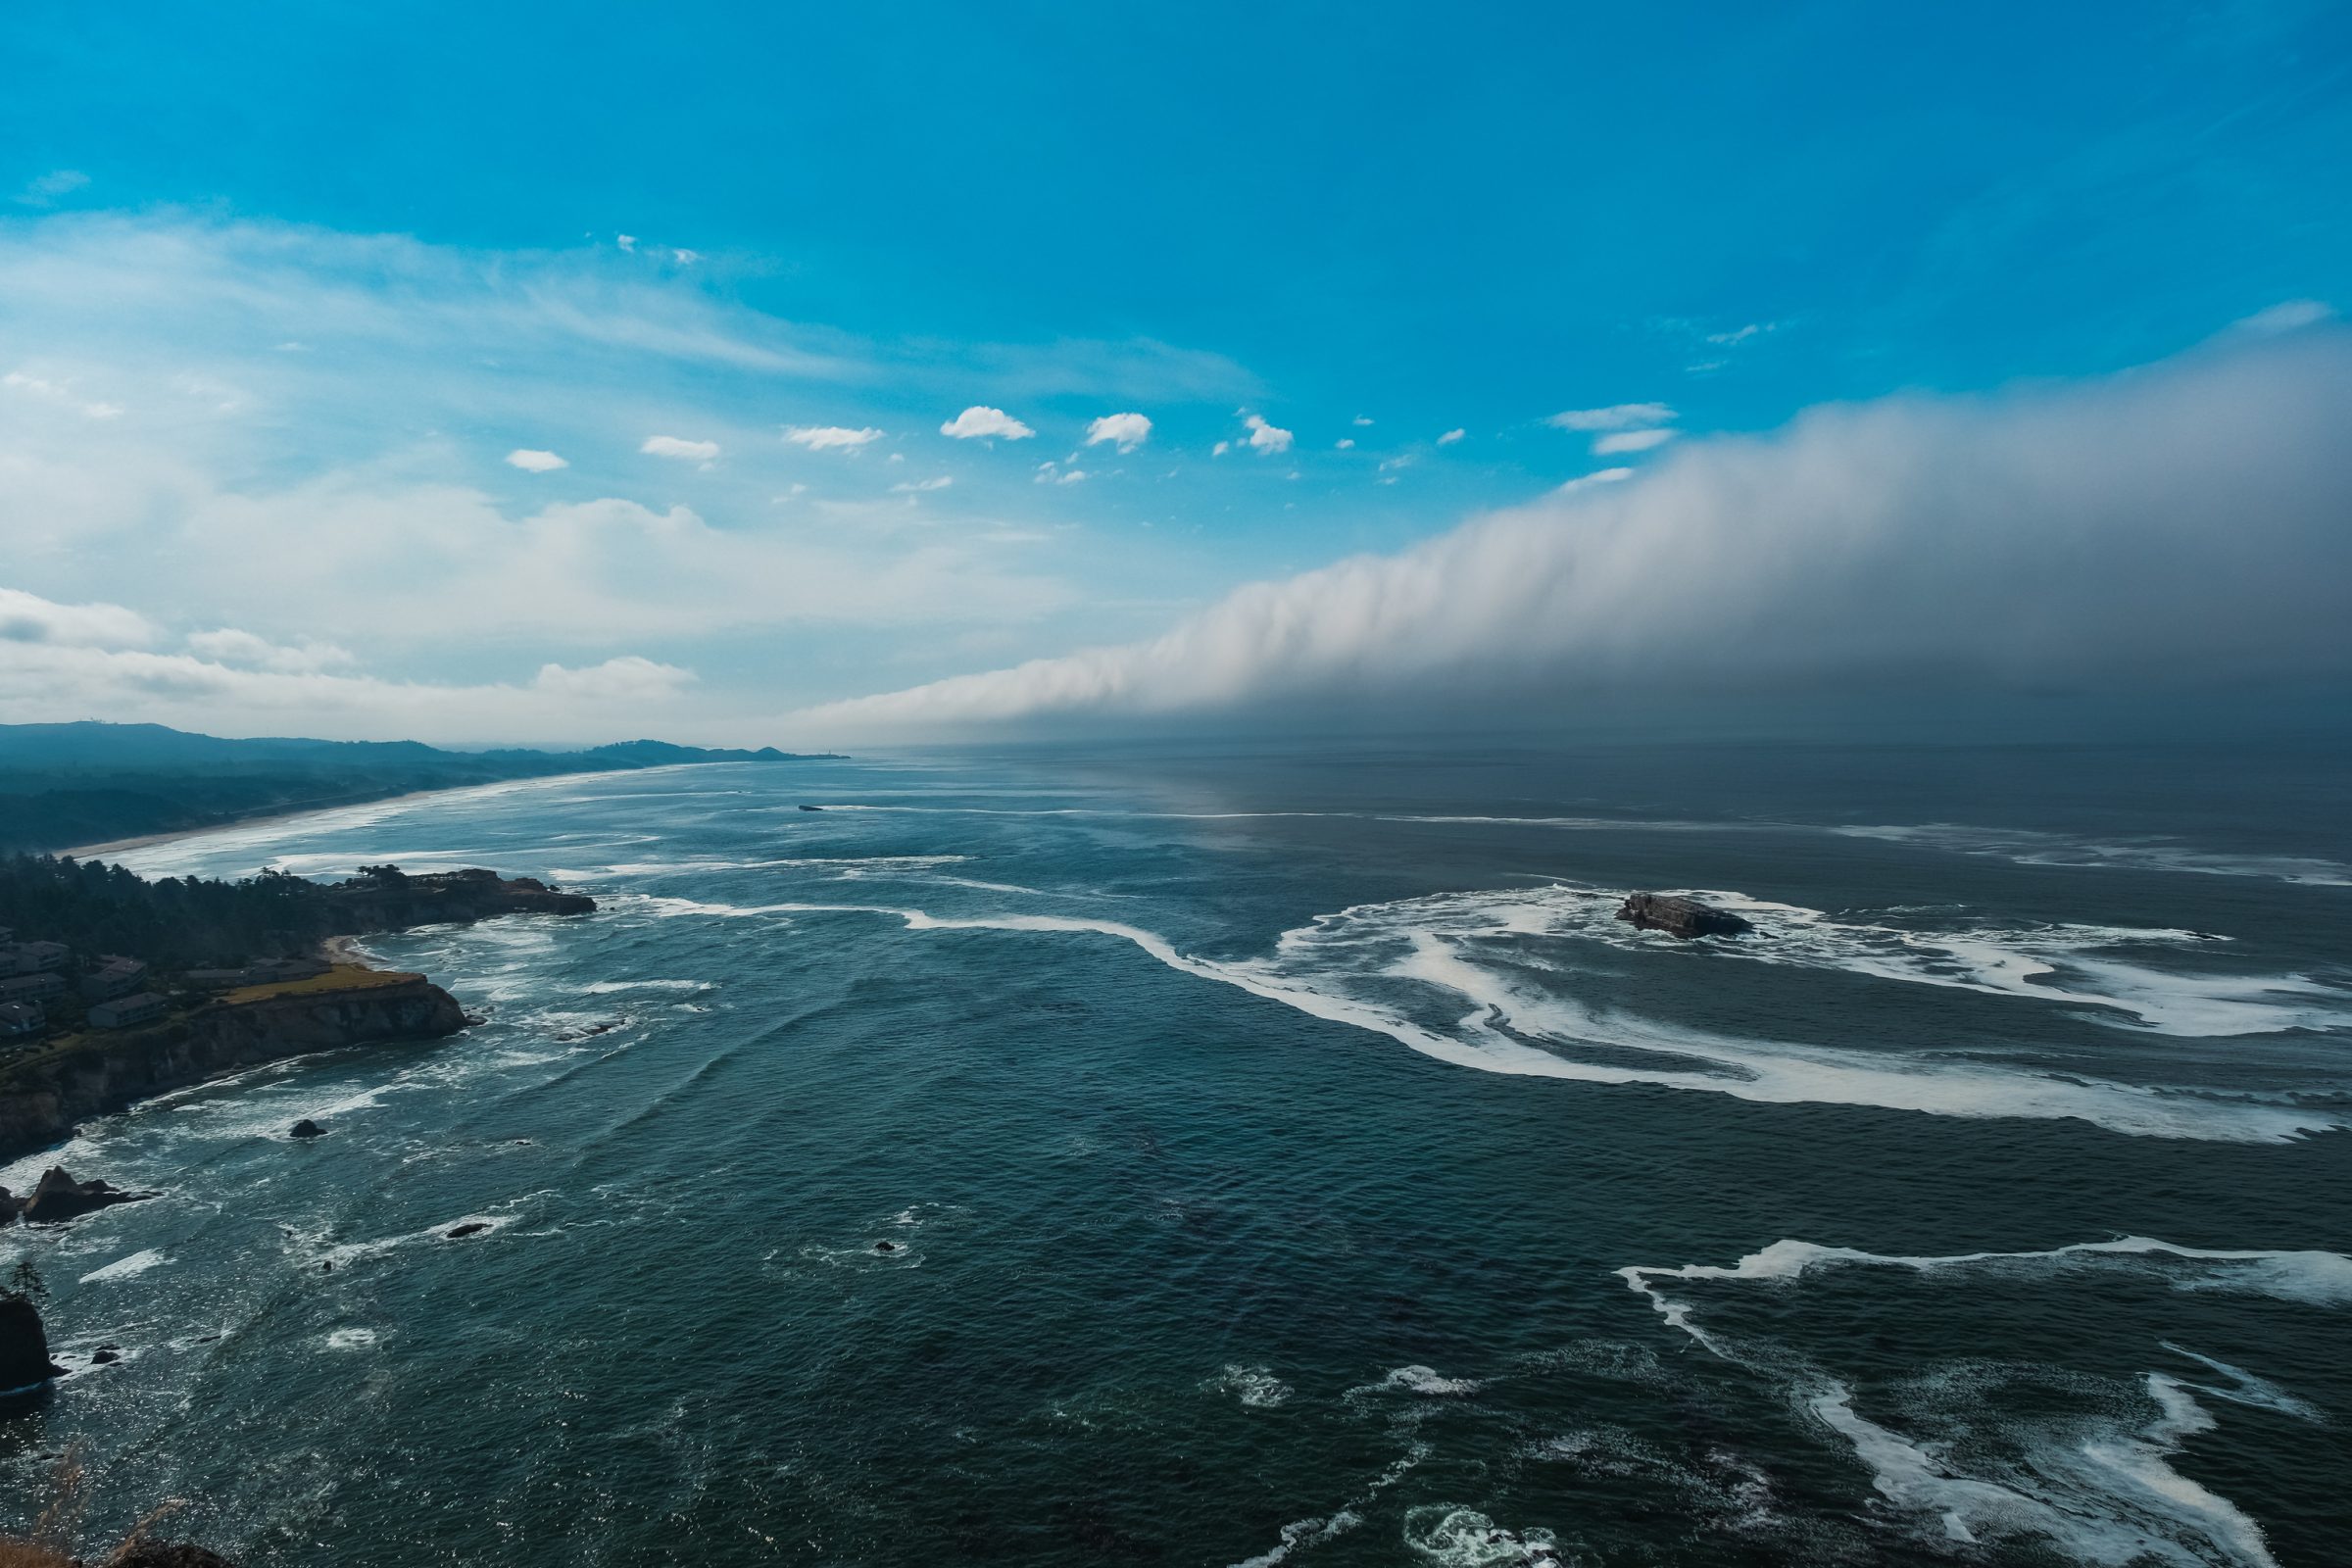 Gusta magla se kotrlja u more i odjednom je opet boja u životu | Obala Oregona